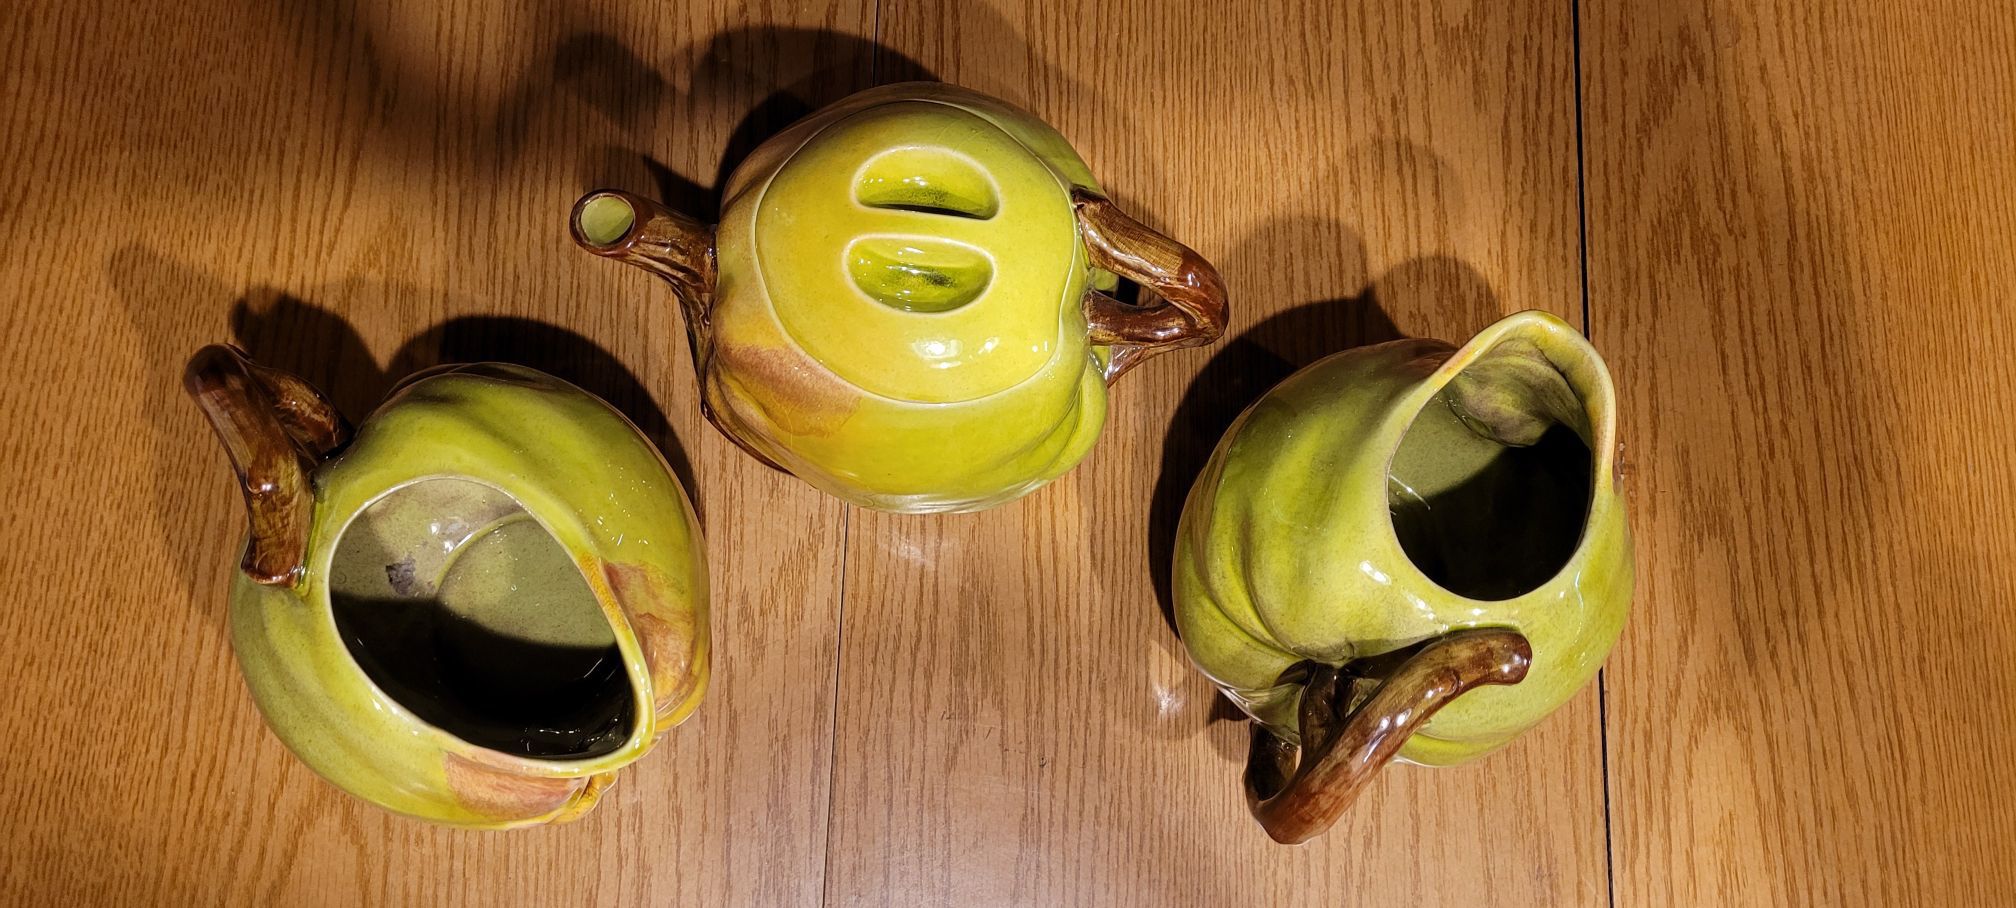 2 Pitchers And A Tea Pot Ceramic Green Pumpkins